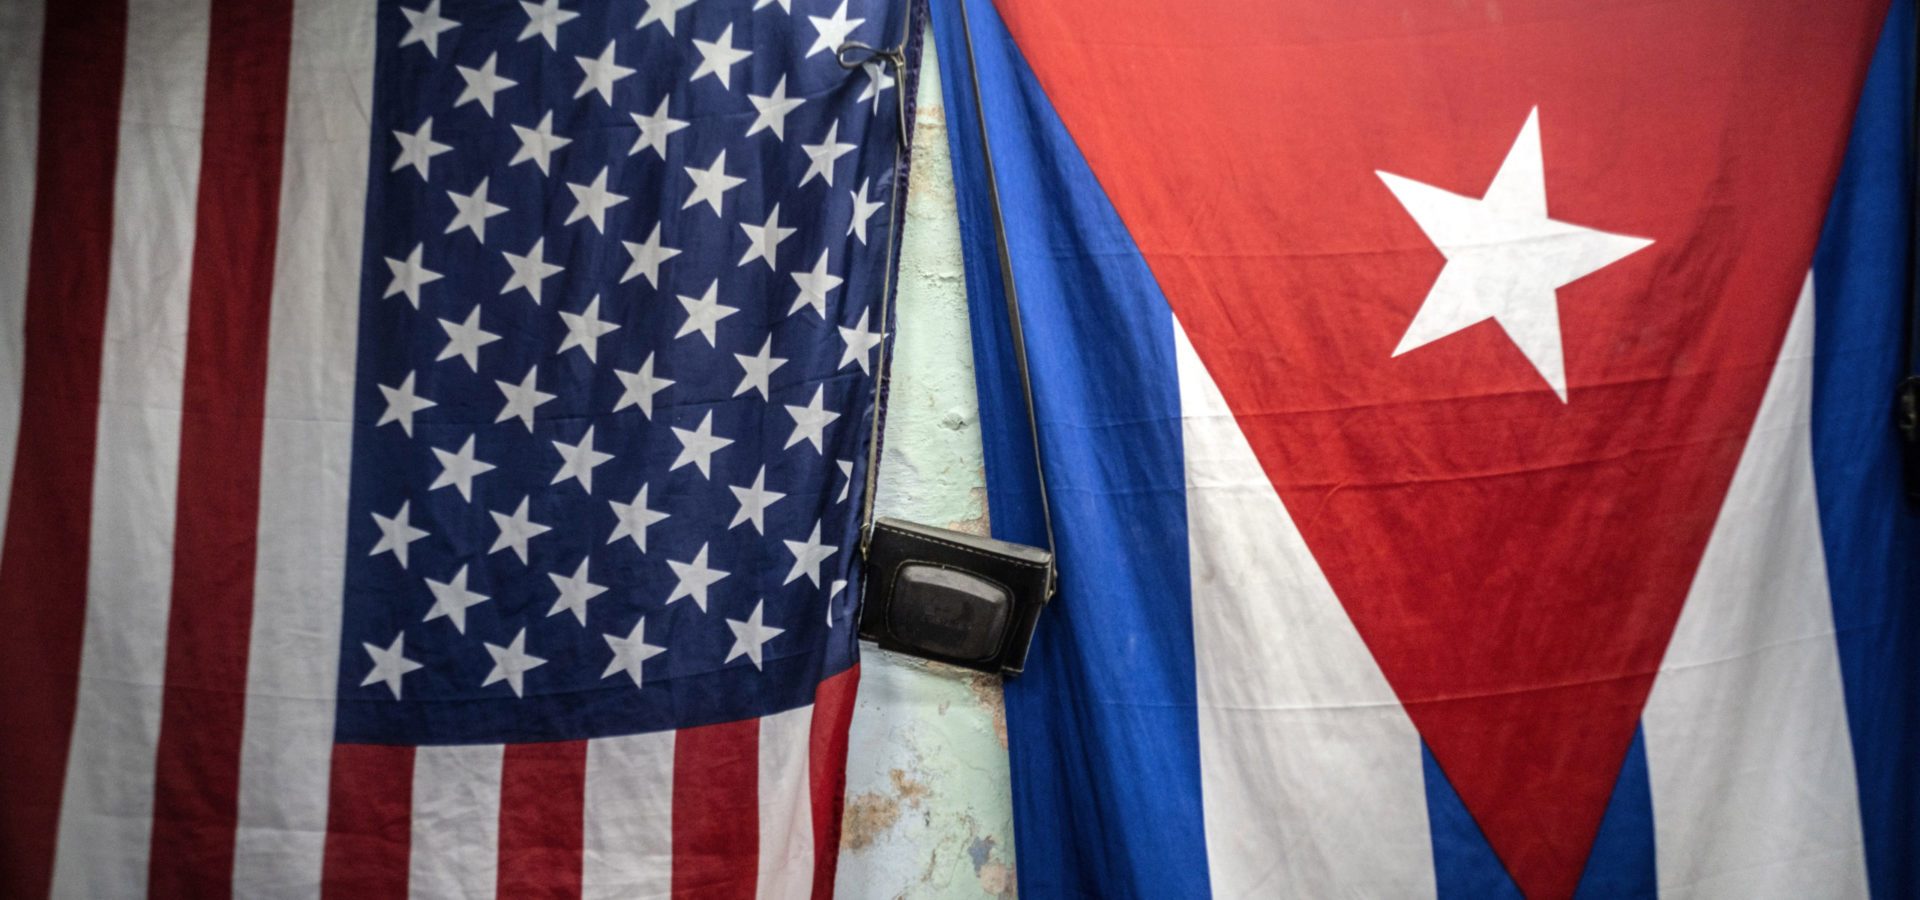 Die Vereinigten Staaten organisieren für den 15. Nov. eine Farbrevolution in Kuba